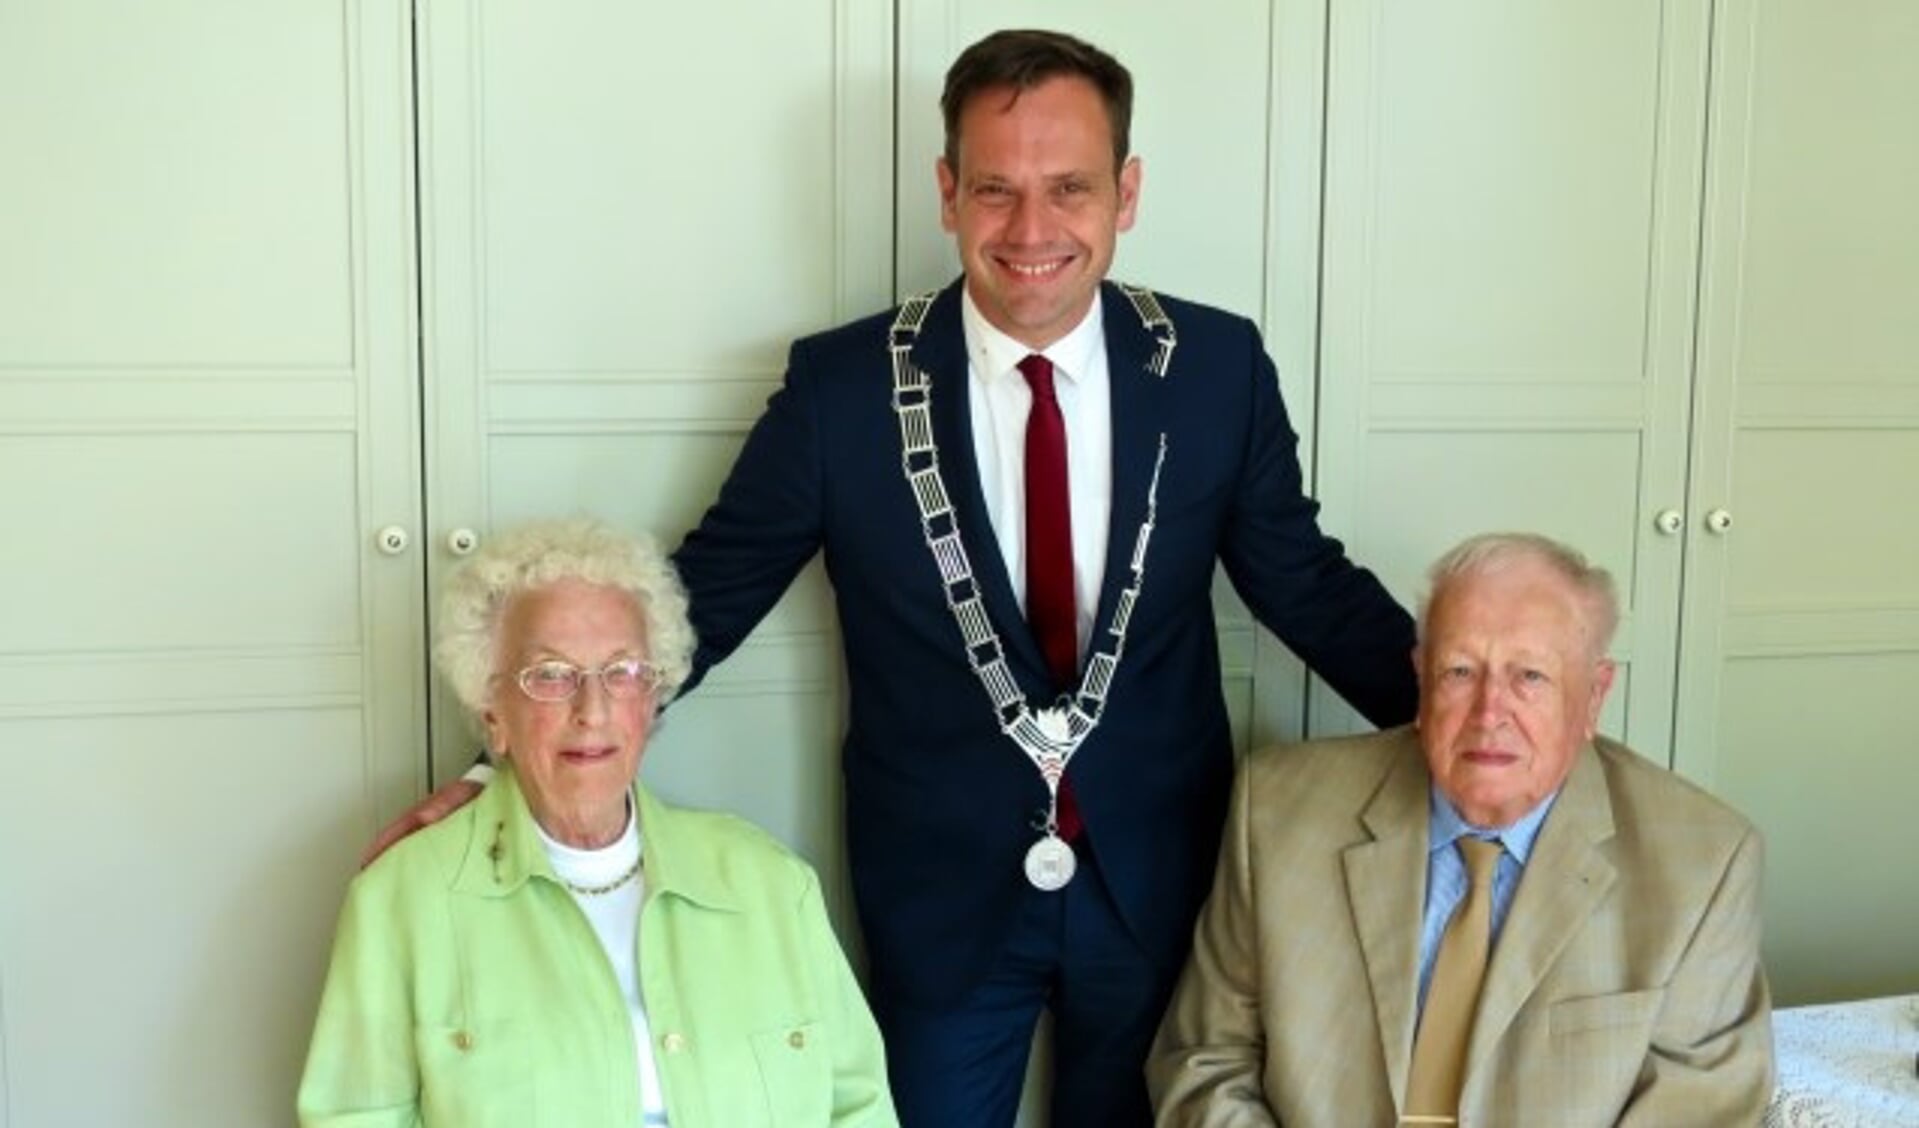 Diamanten bruidspaar Willemijntje en Gerard Nokkert- Van Keulen werden persoonlijk gefeliciteerd door burgemeester Sjoerd Potters